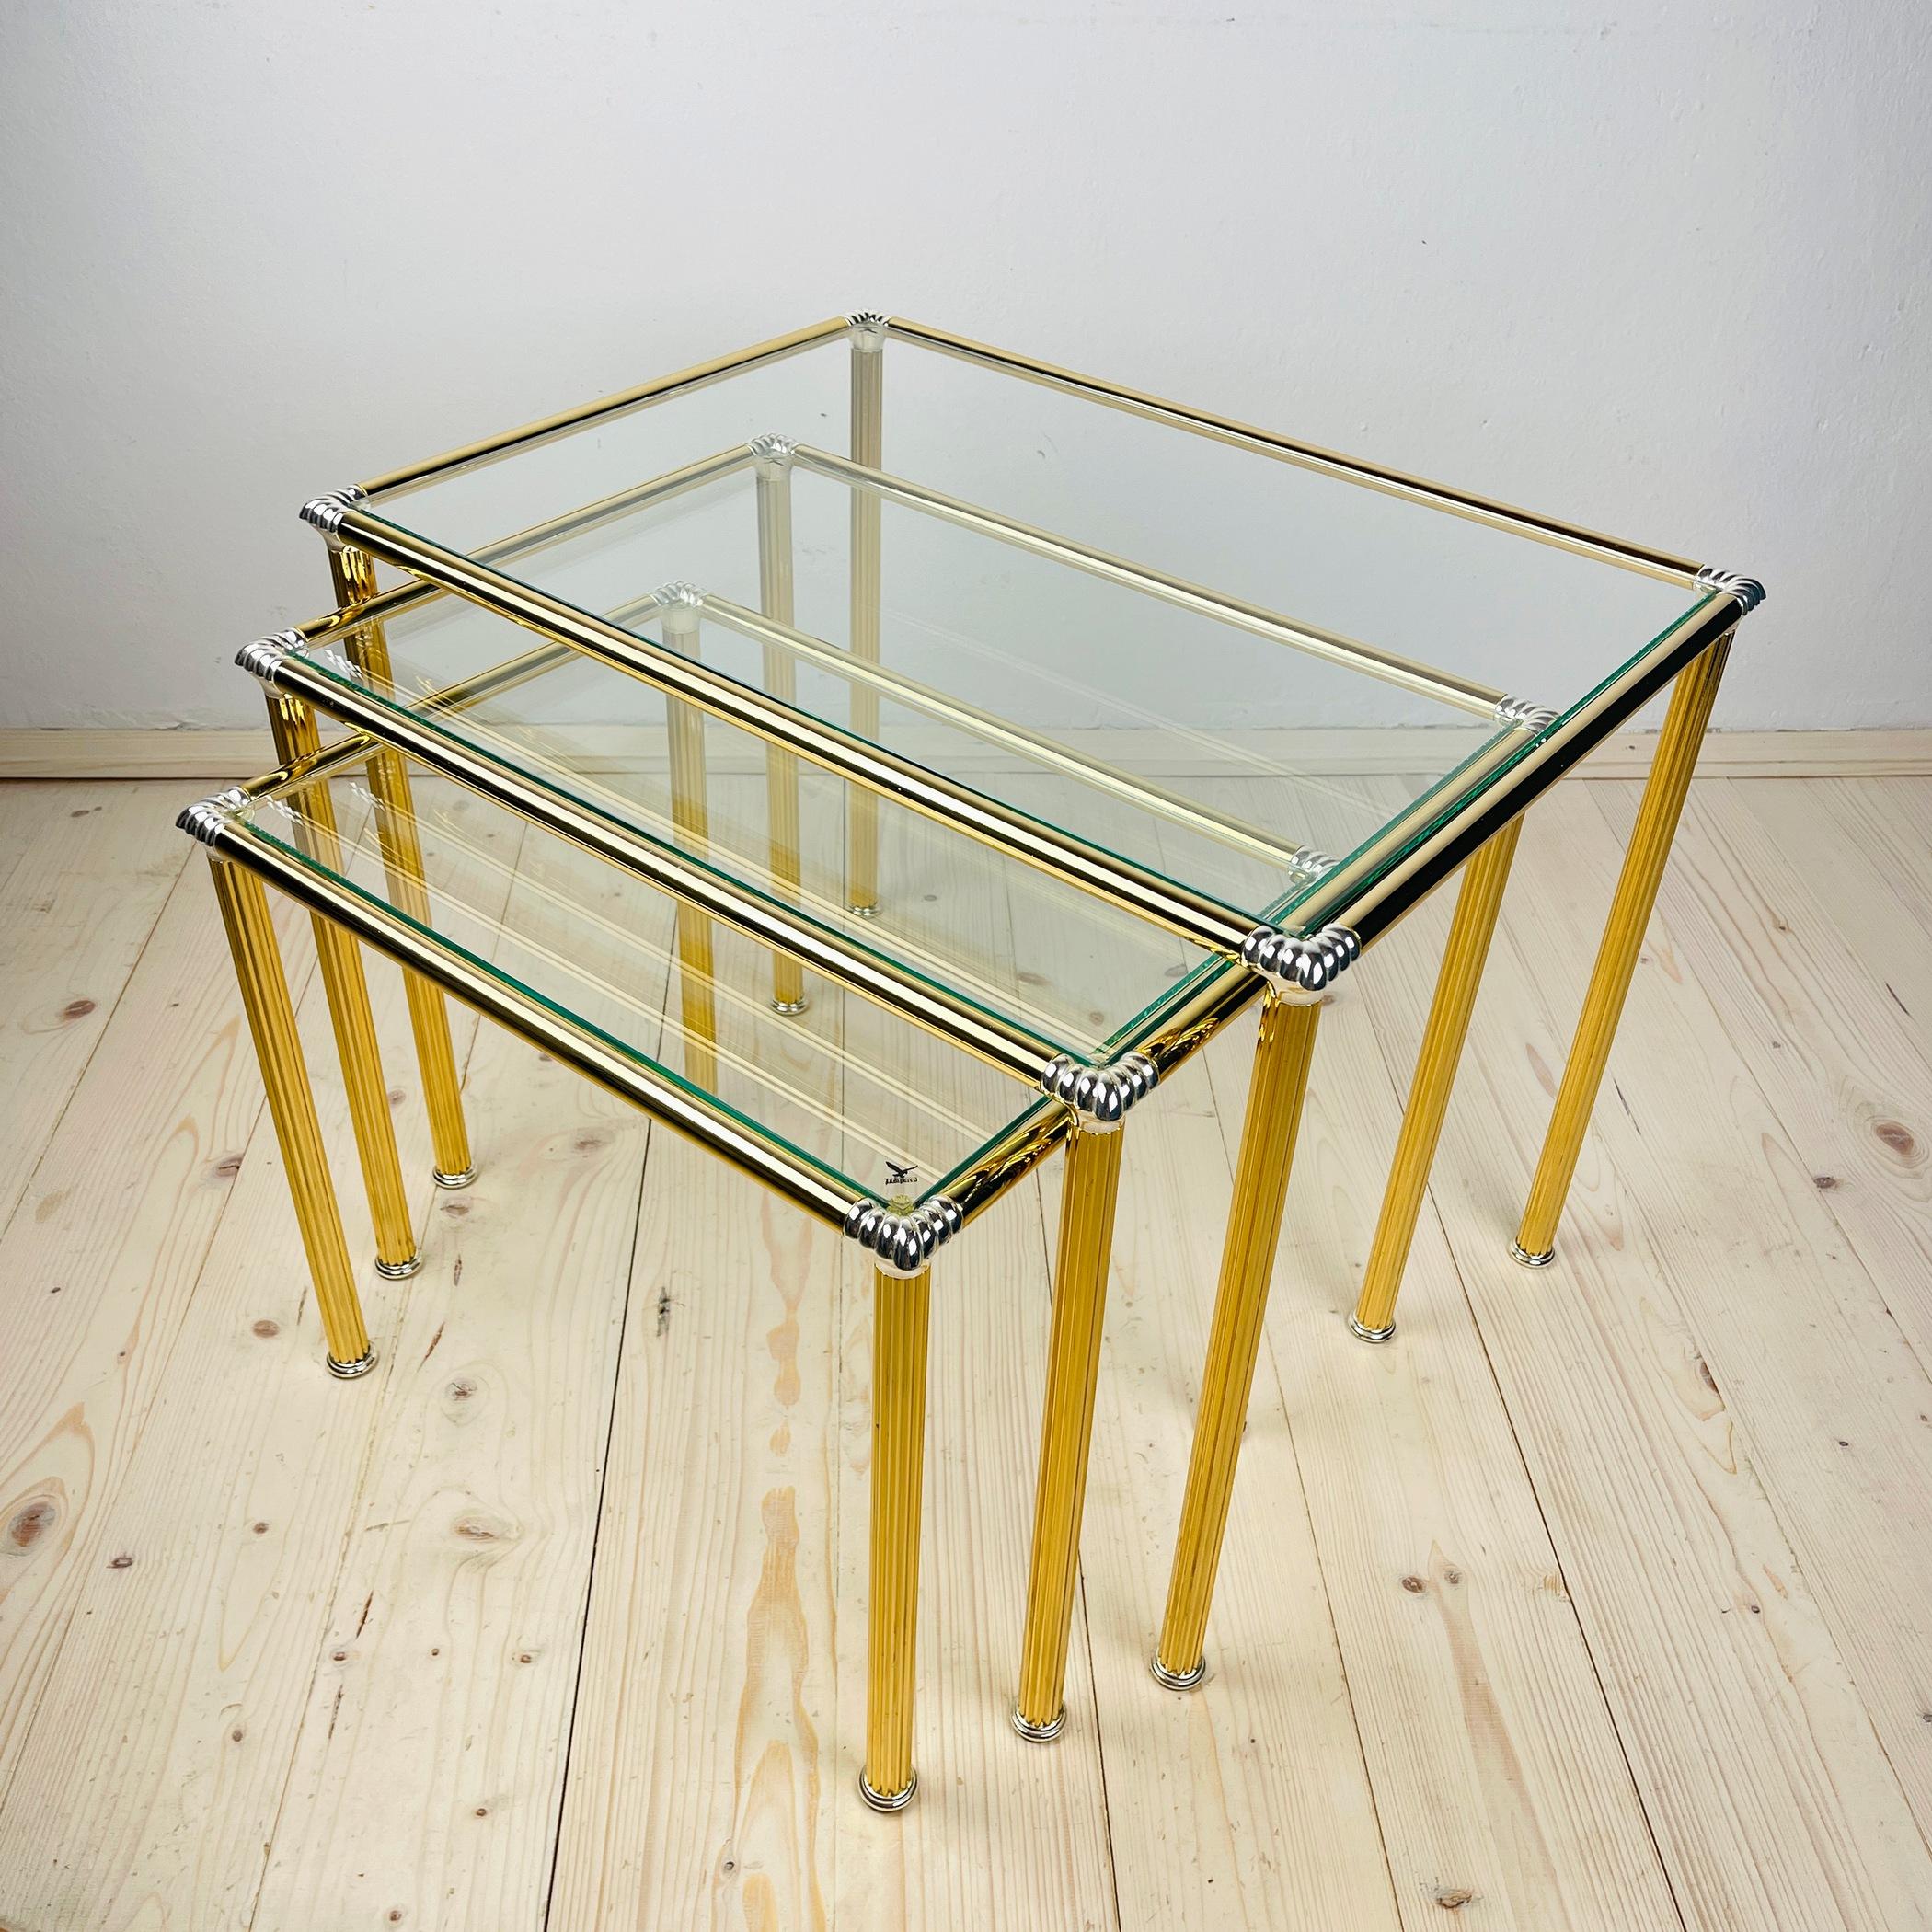 Wir präsentieren ein exquisites Set aus 3 goldenen Schachteltischen im italienischen Vintage-Design, jeder mit einer wunderschönen Glasplatte versehen. Diese Tische sind so gestaltet, dass sie sich ineinander schmiegen und nicht nur moderne Eleganz